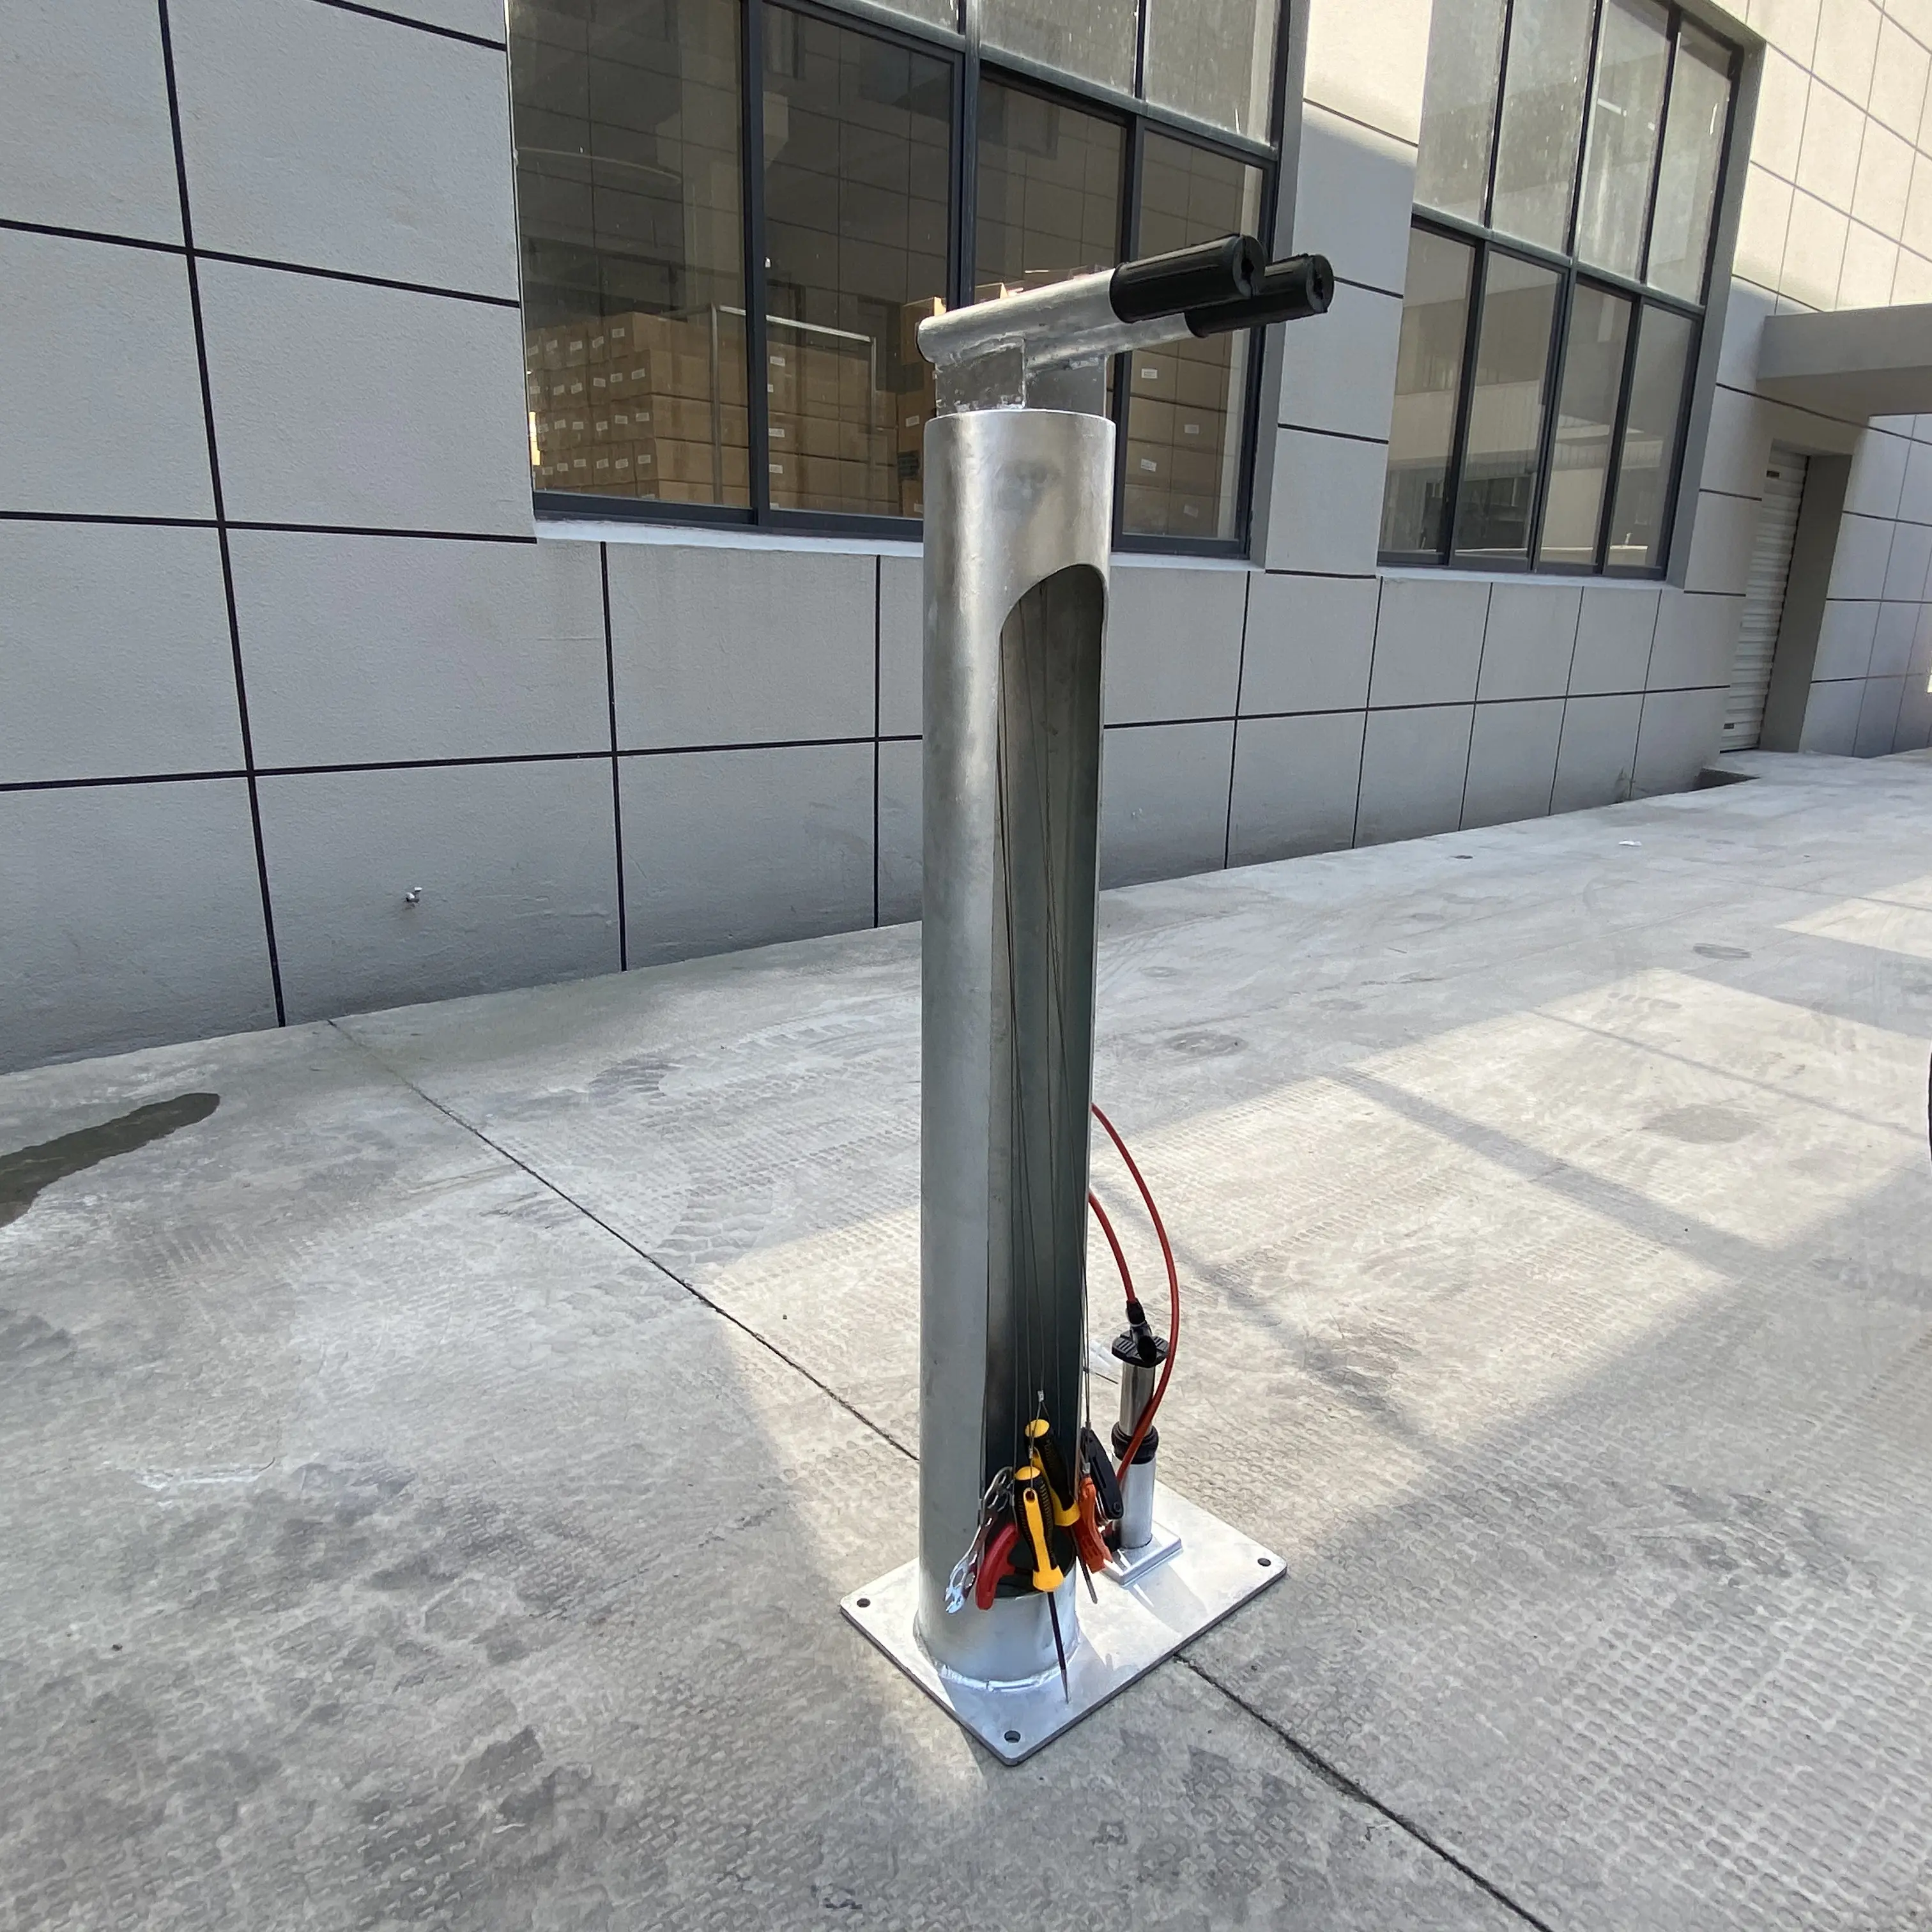 Fixit kamu bisiklet tamir istasyonu bisiklet çalışma göstergesi ve araçları ile standı